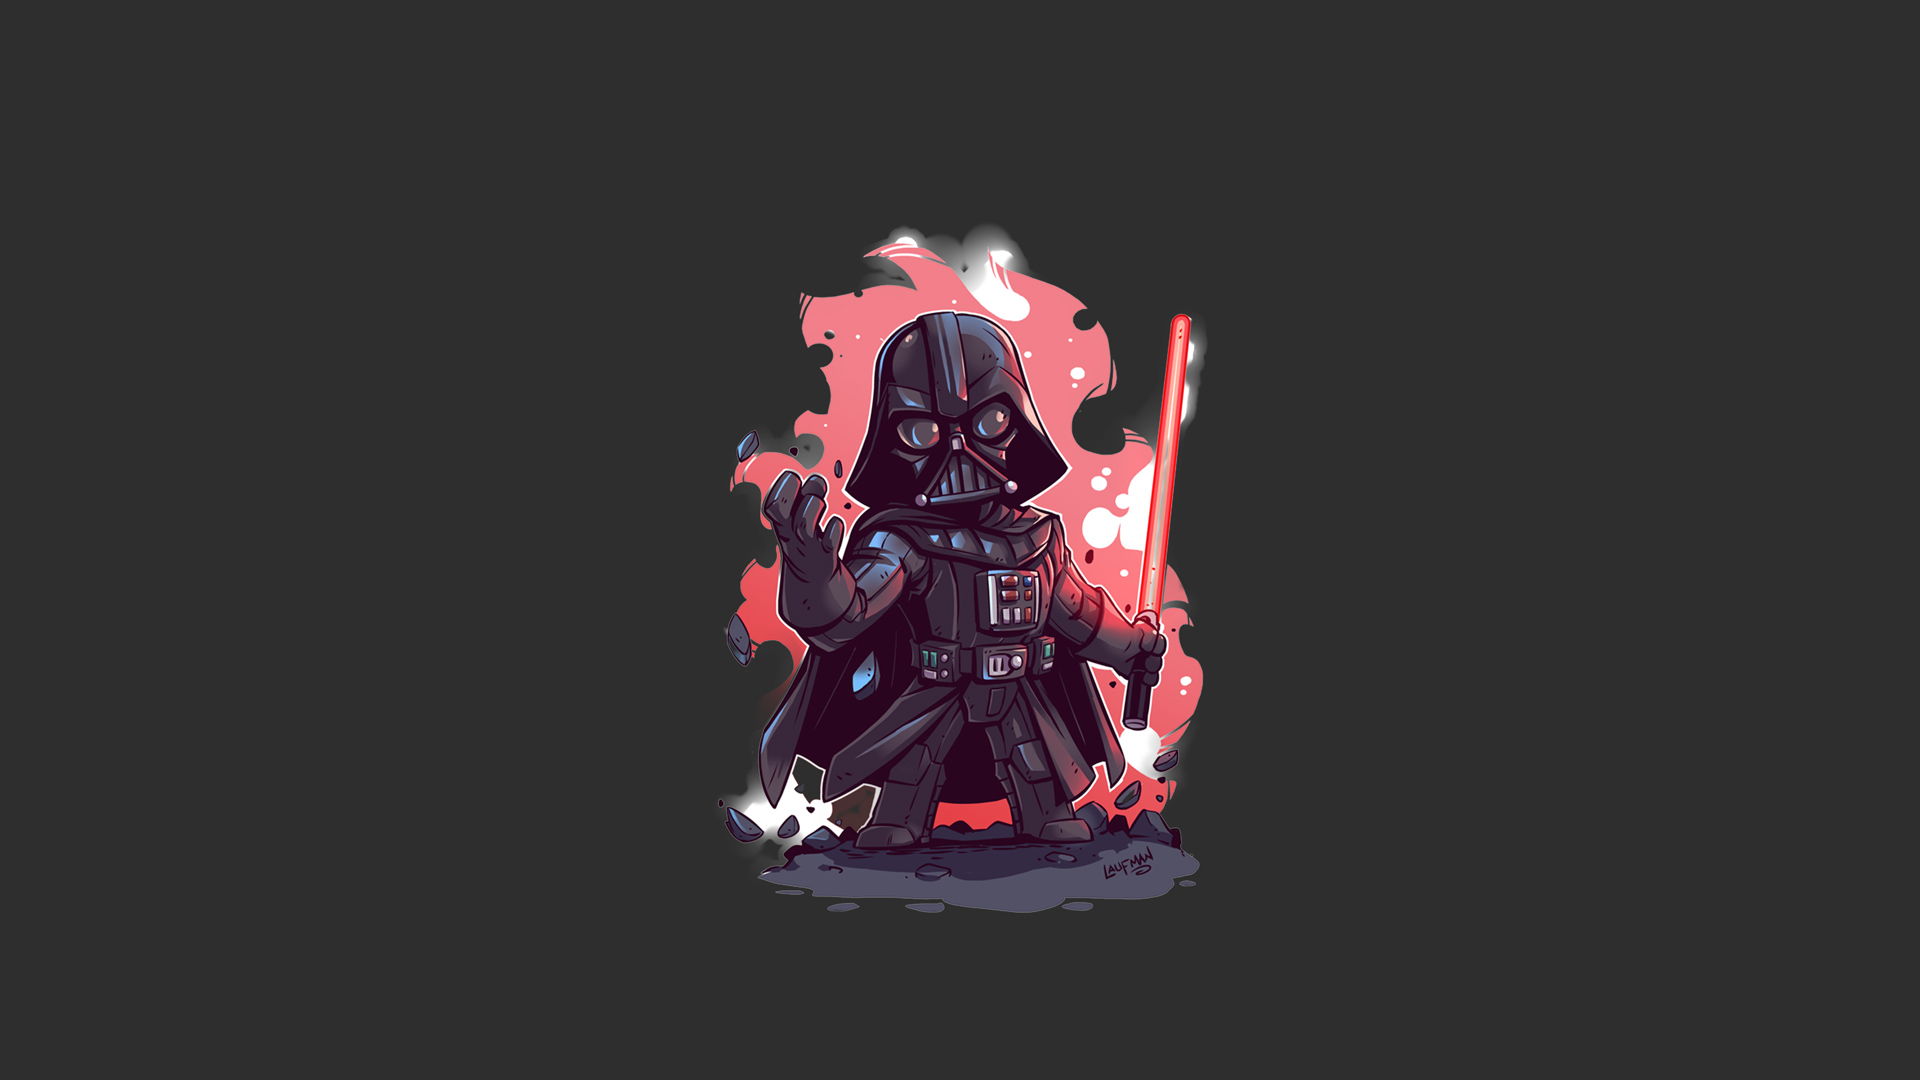 Darth Vader Minimalist Illustration Wallpaper Full HD